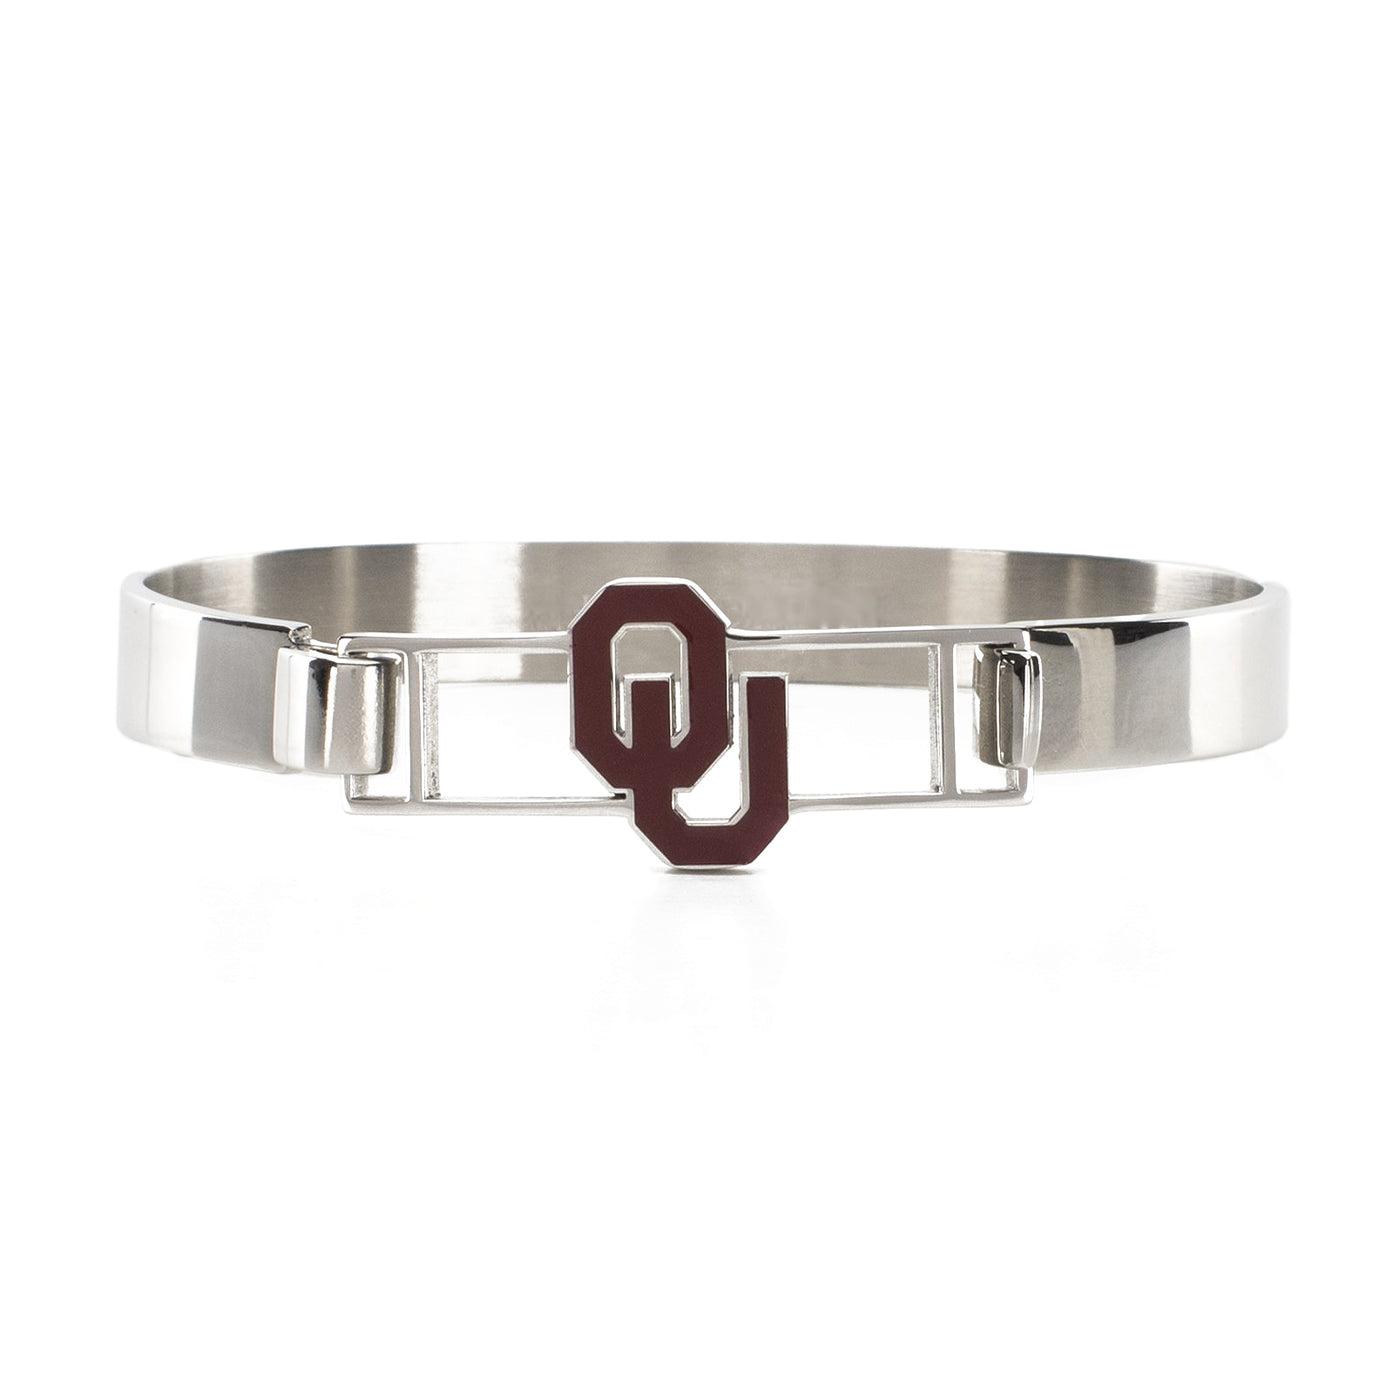 NCAA Kristin Bangle Bracelet - University of Oklahoma "OU" Silver